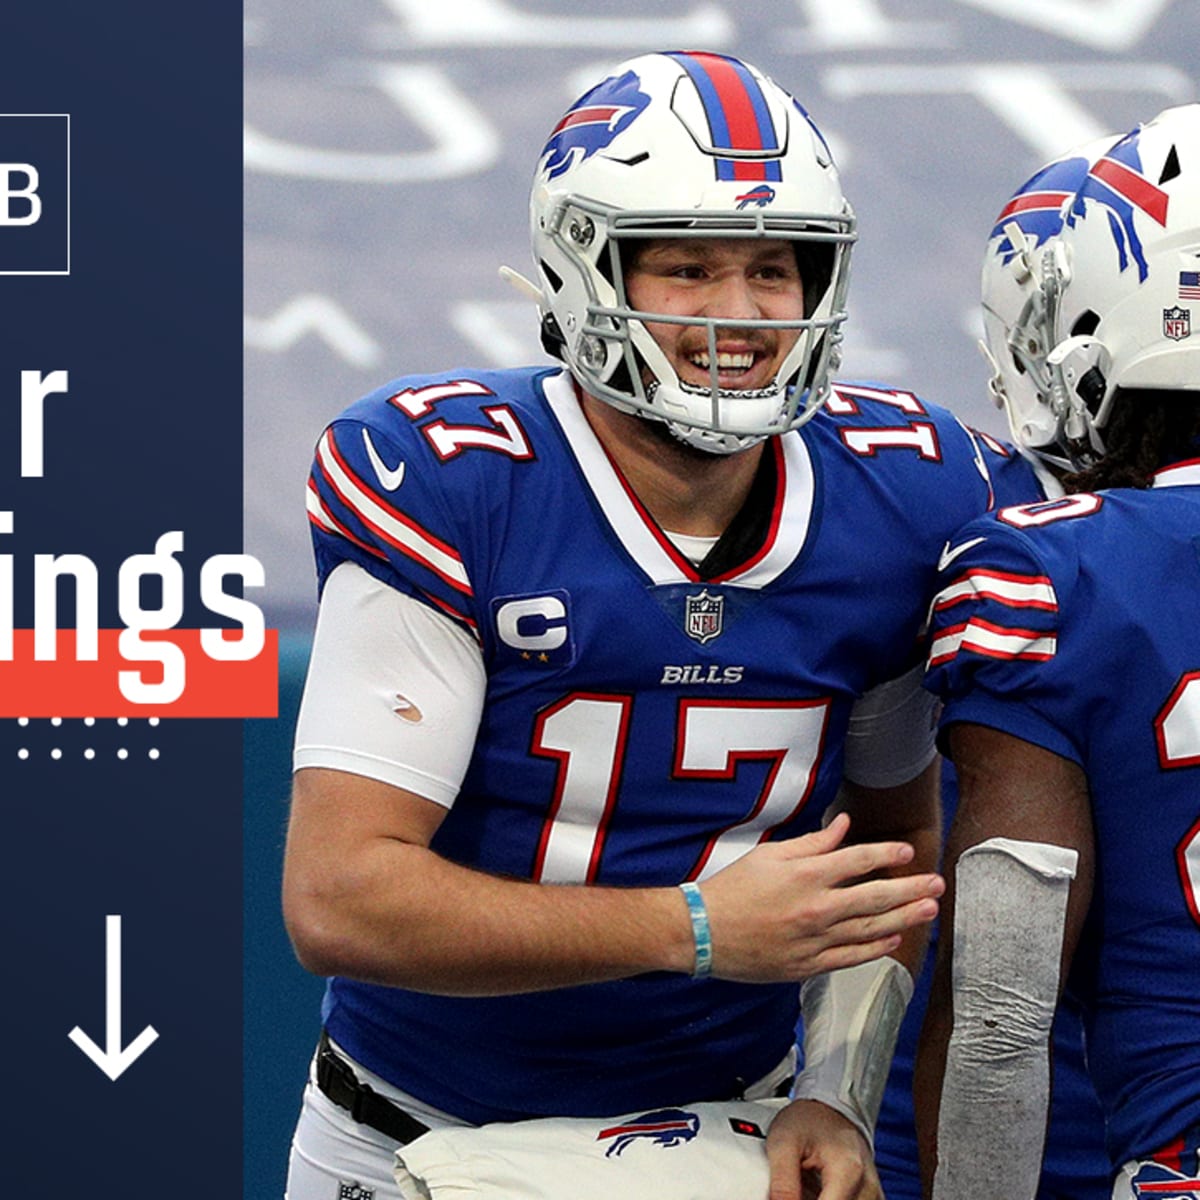 NFL Power Rankings, Week 14: Dolphins trending up; Vikings, Raiders sinking